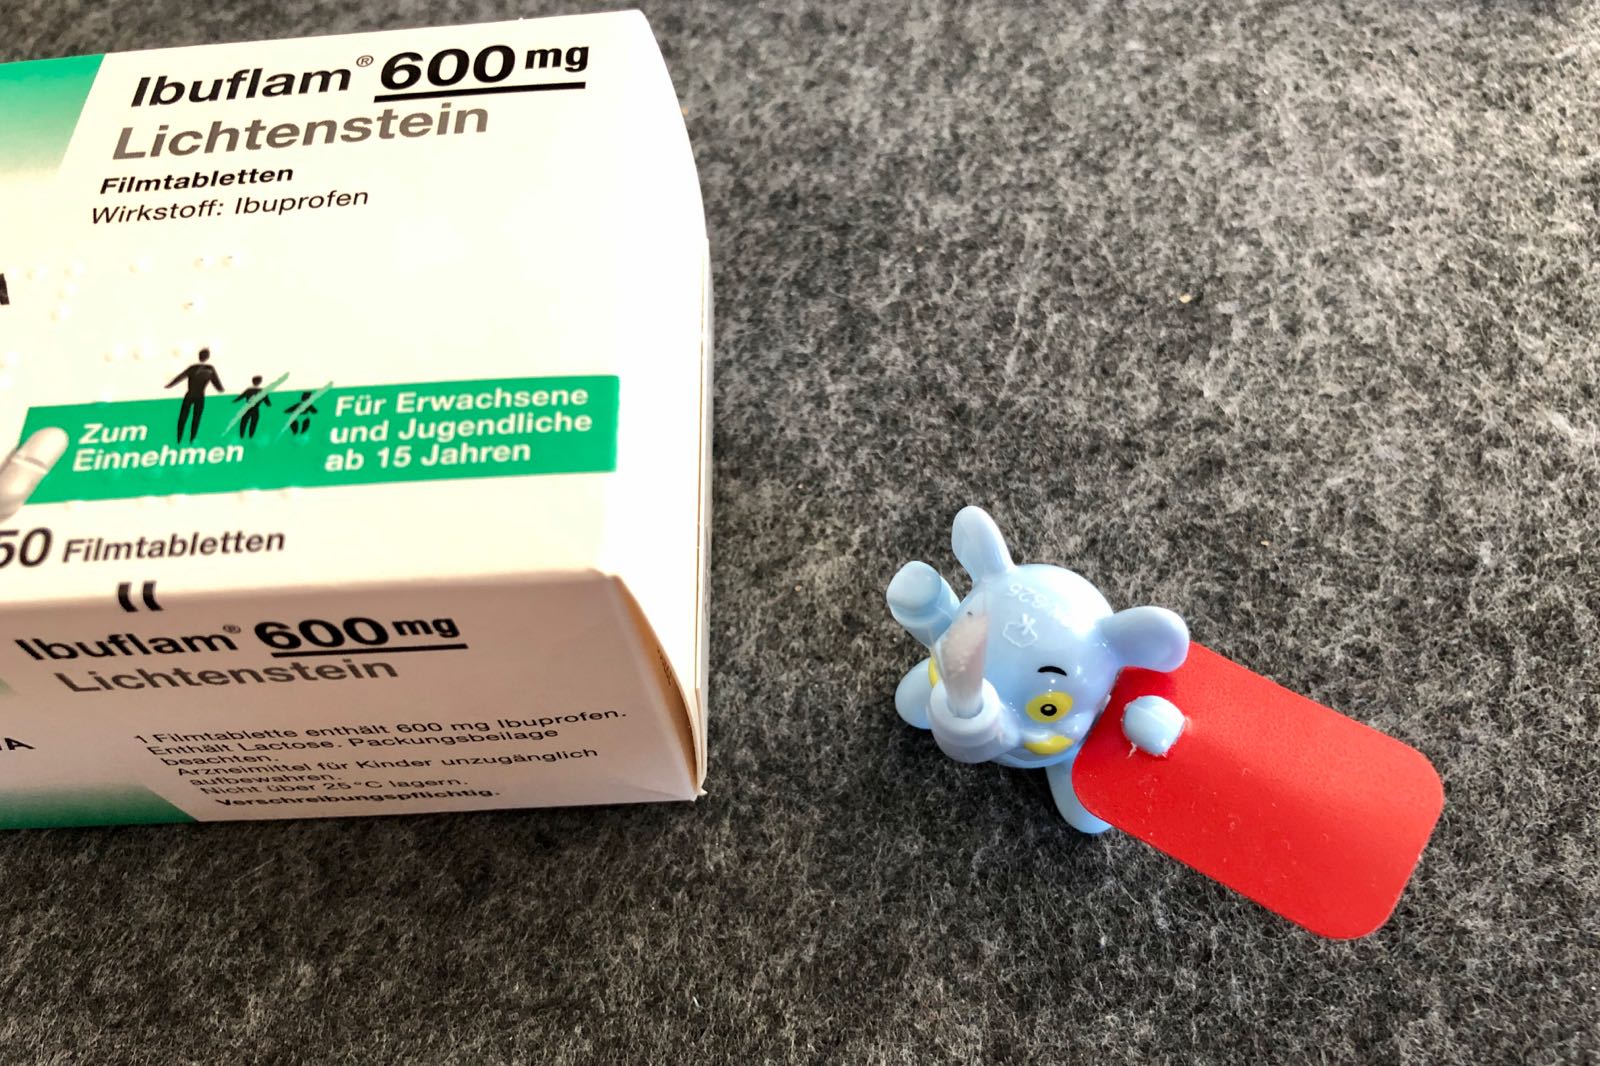 Lichtenstein mg ibuflam wikipedia 600 